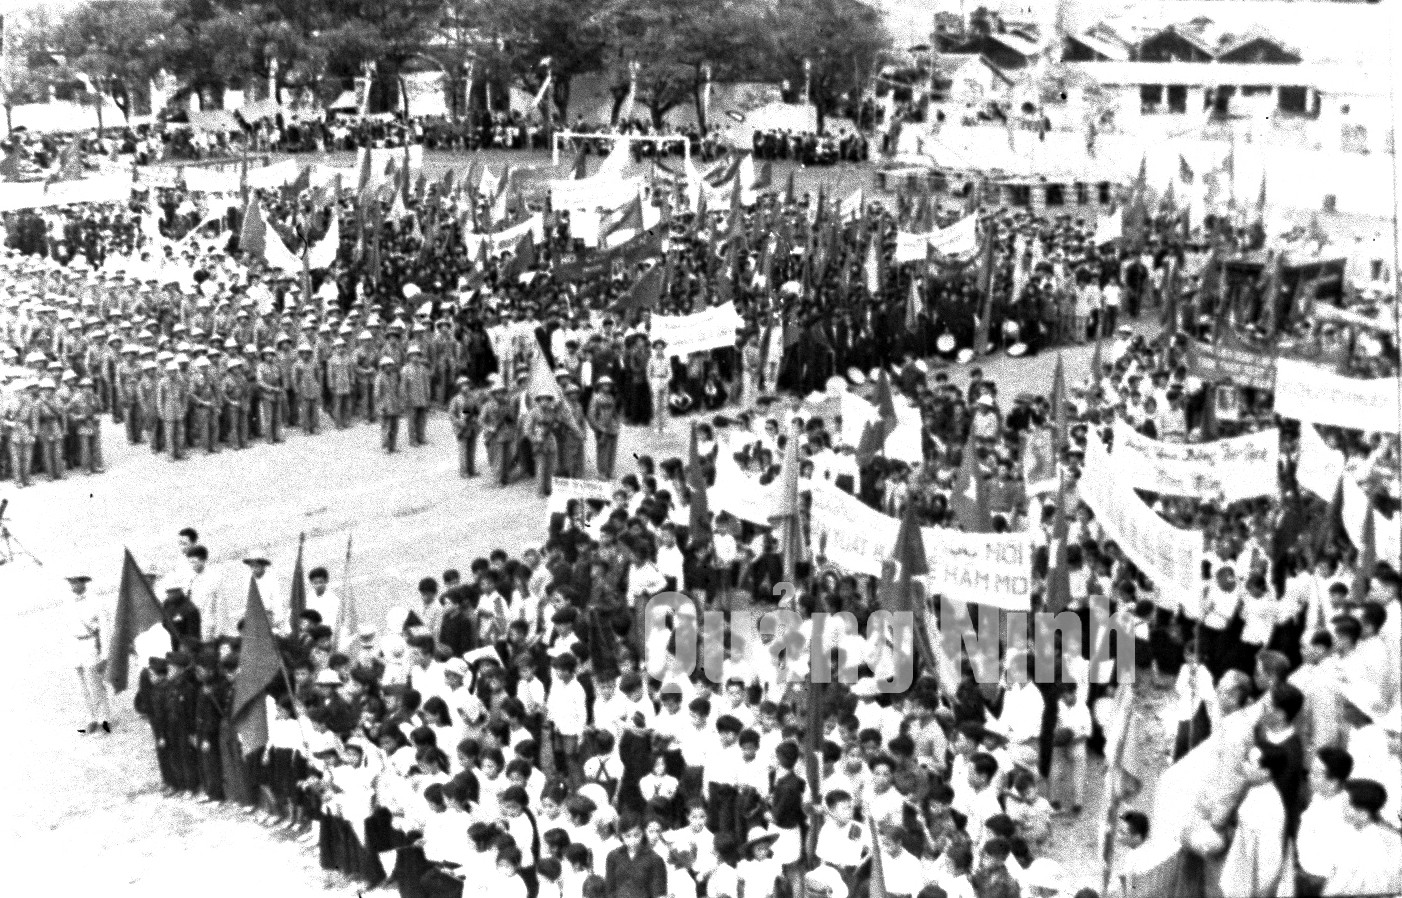 Quang cảnh buổi mít tinh mừng vùng mỏ được giải phóng tổ chức tại Hòn Gai (1-5-1955). Ảnh tư liệu của Bảo tàng Quảng Ninh